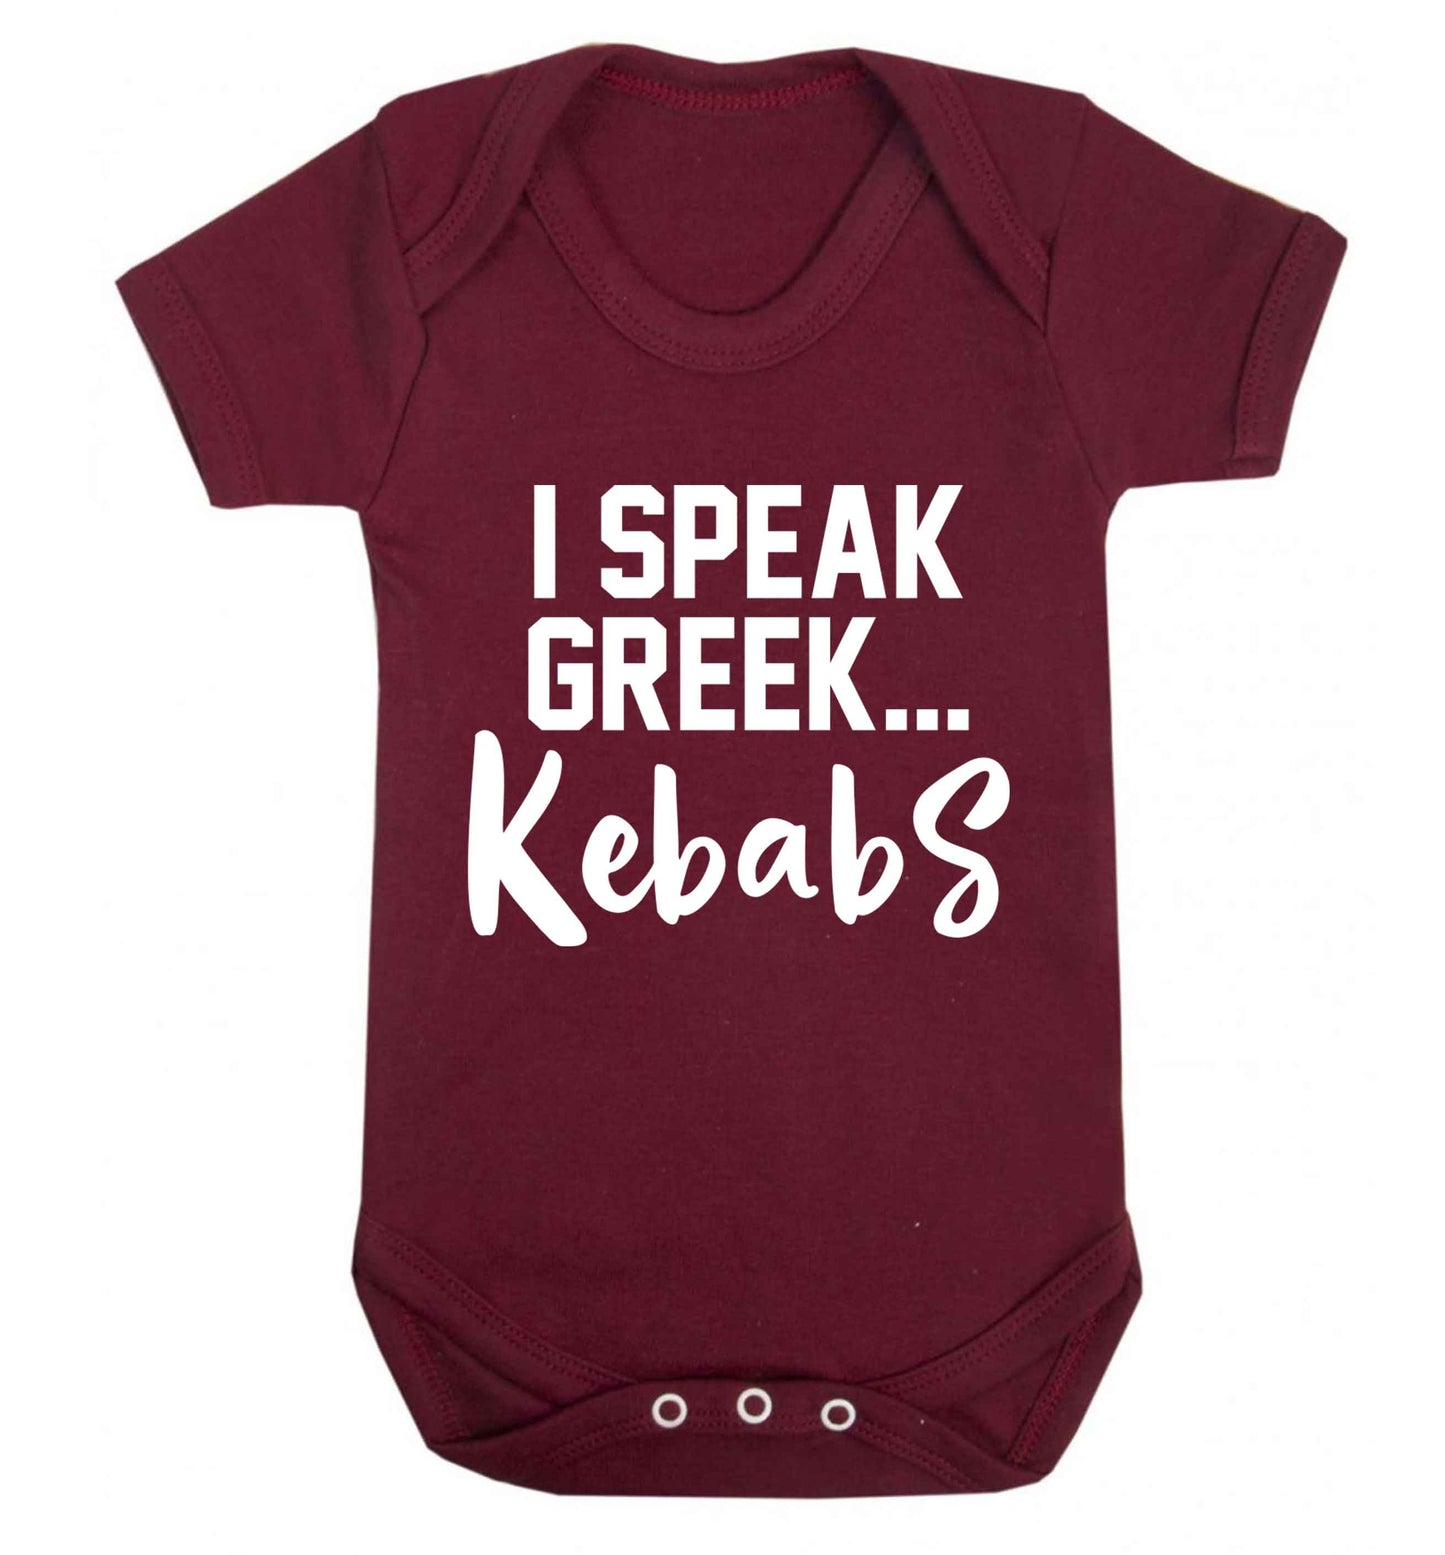 I speak Greek...kebabs Baby Vest maroon 18-24 months